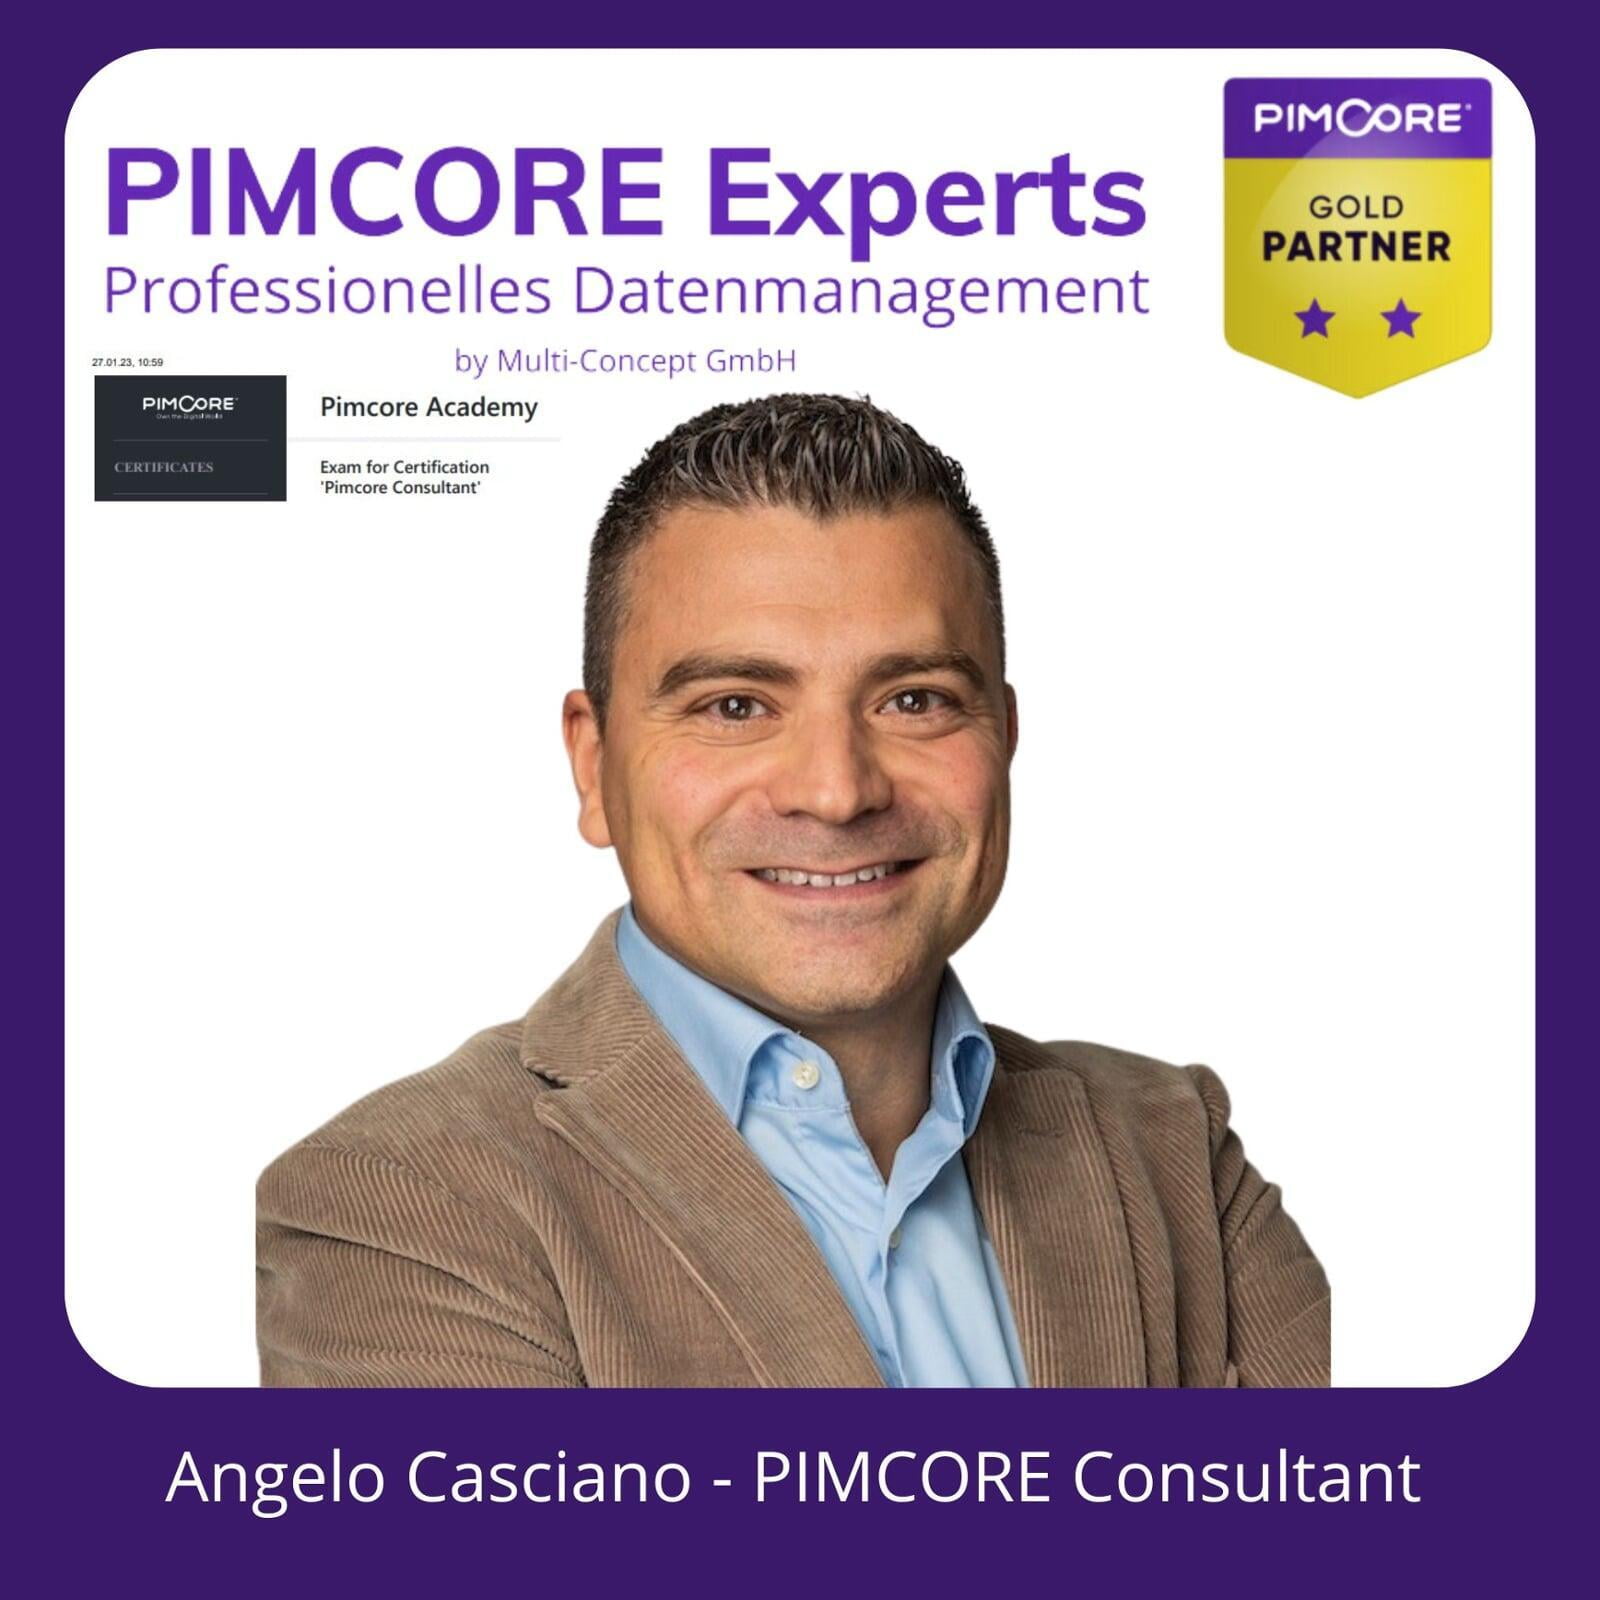 Angelo Casciano - PIMCORE Consultant